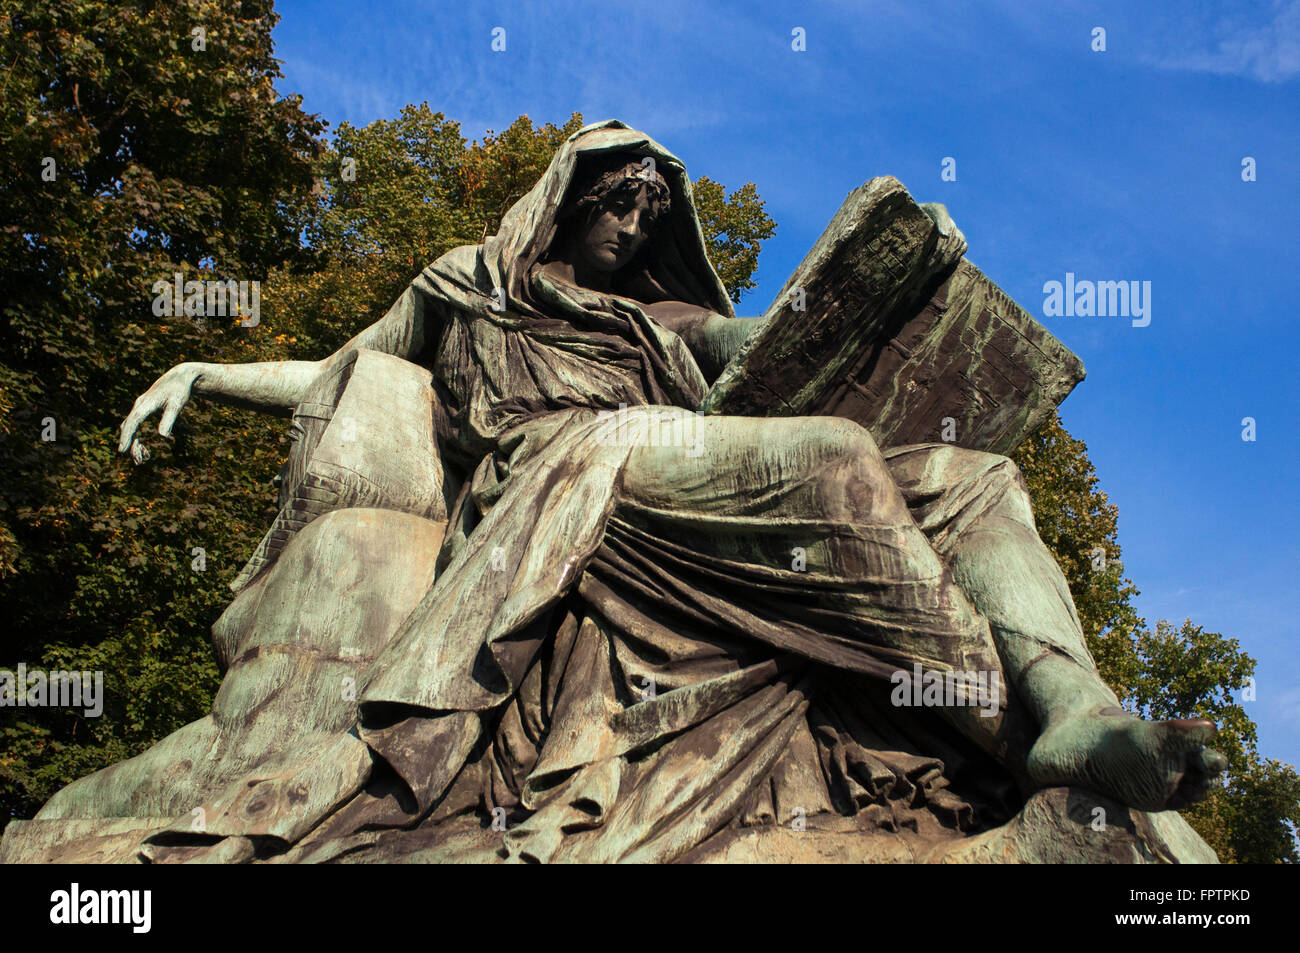 L'un de la statue du héros de guerre, Otto von Bismarck est de Grober Stern à Berlin en Allemagne. La colonne de la Victoire - Siegessäule Banque D'Images